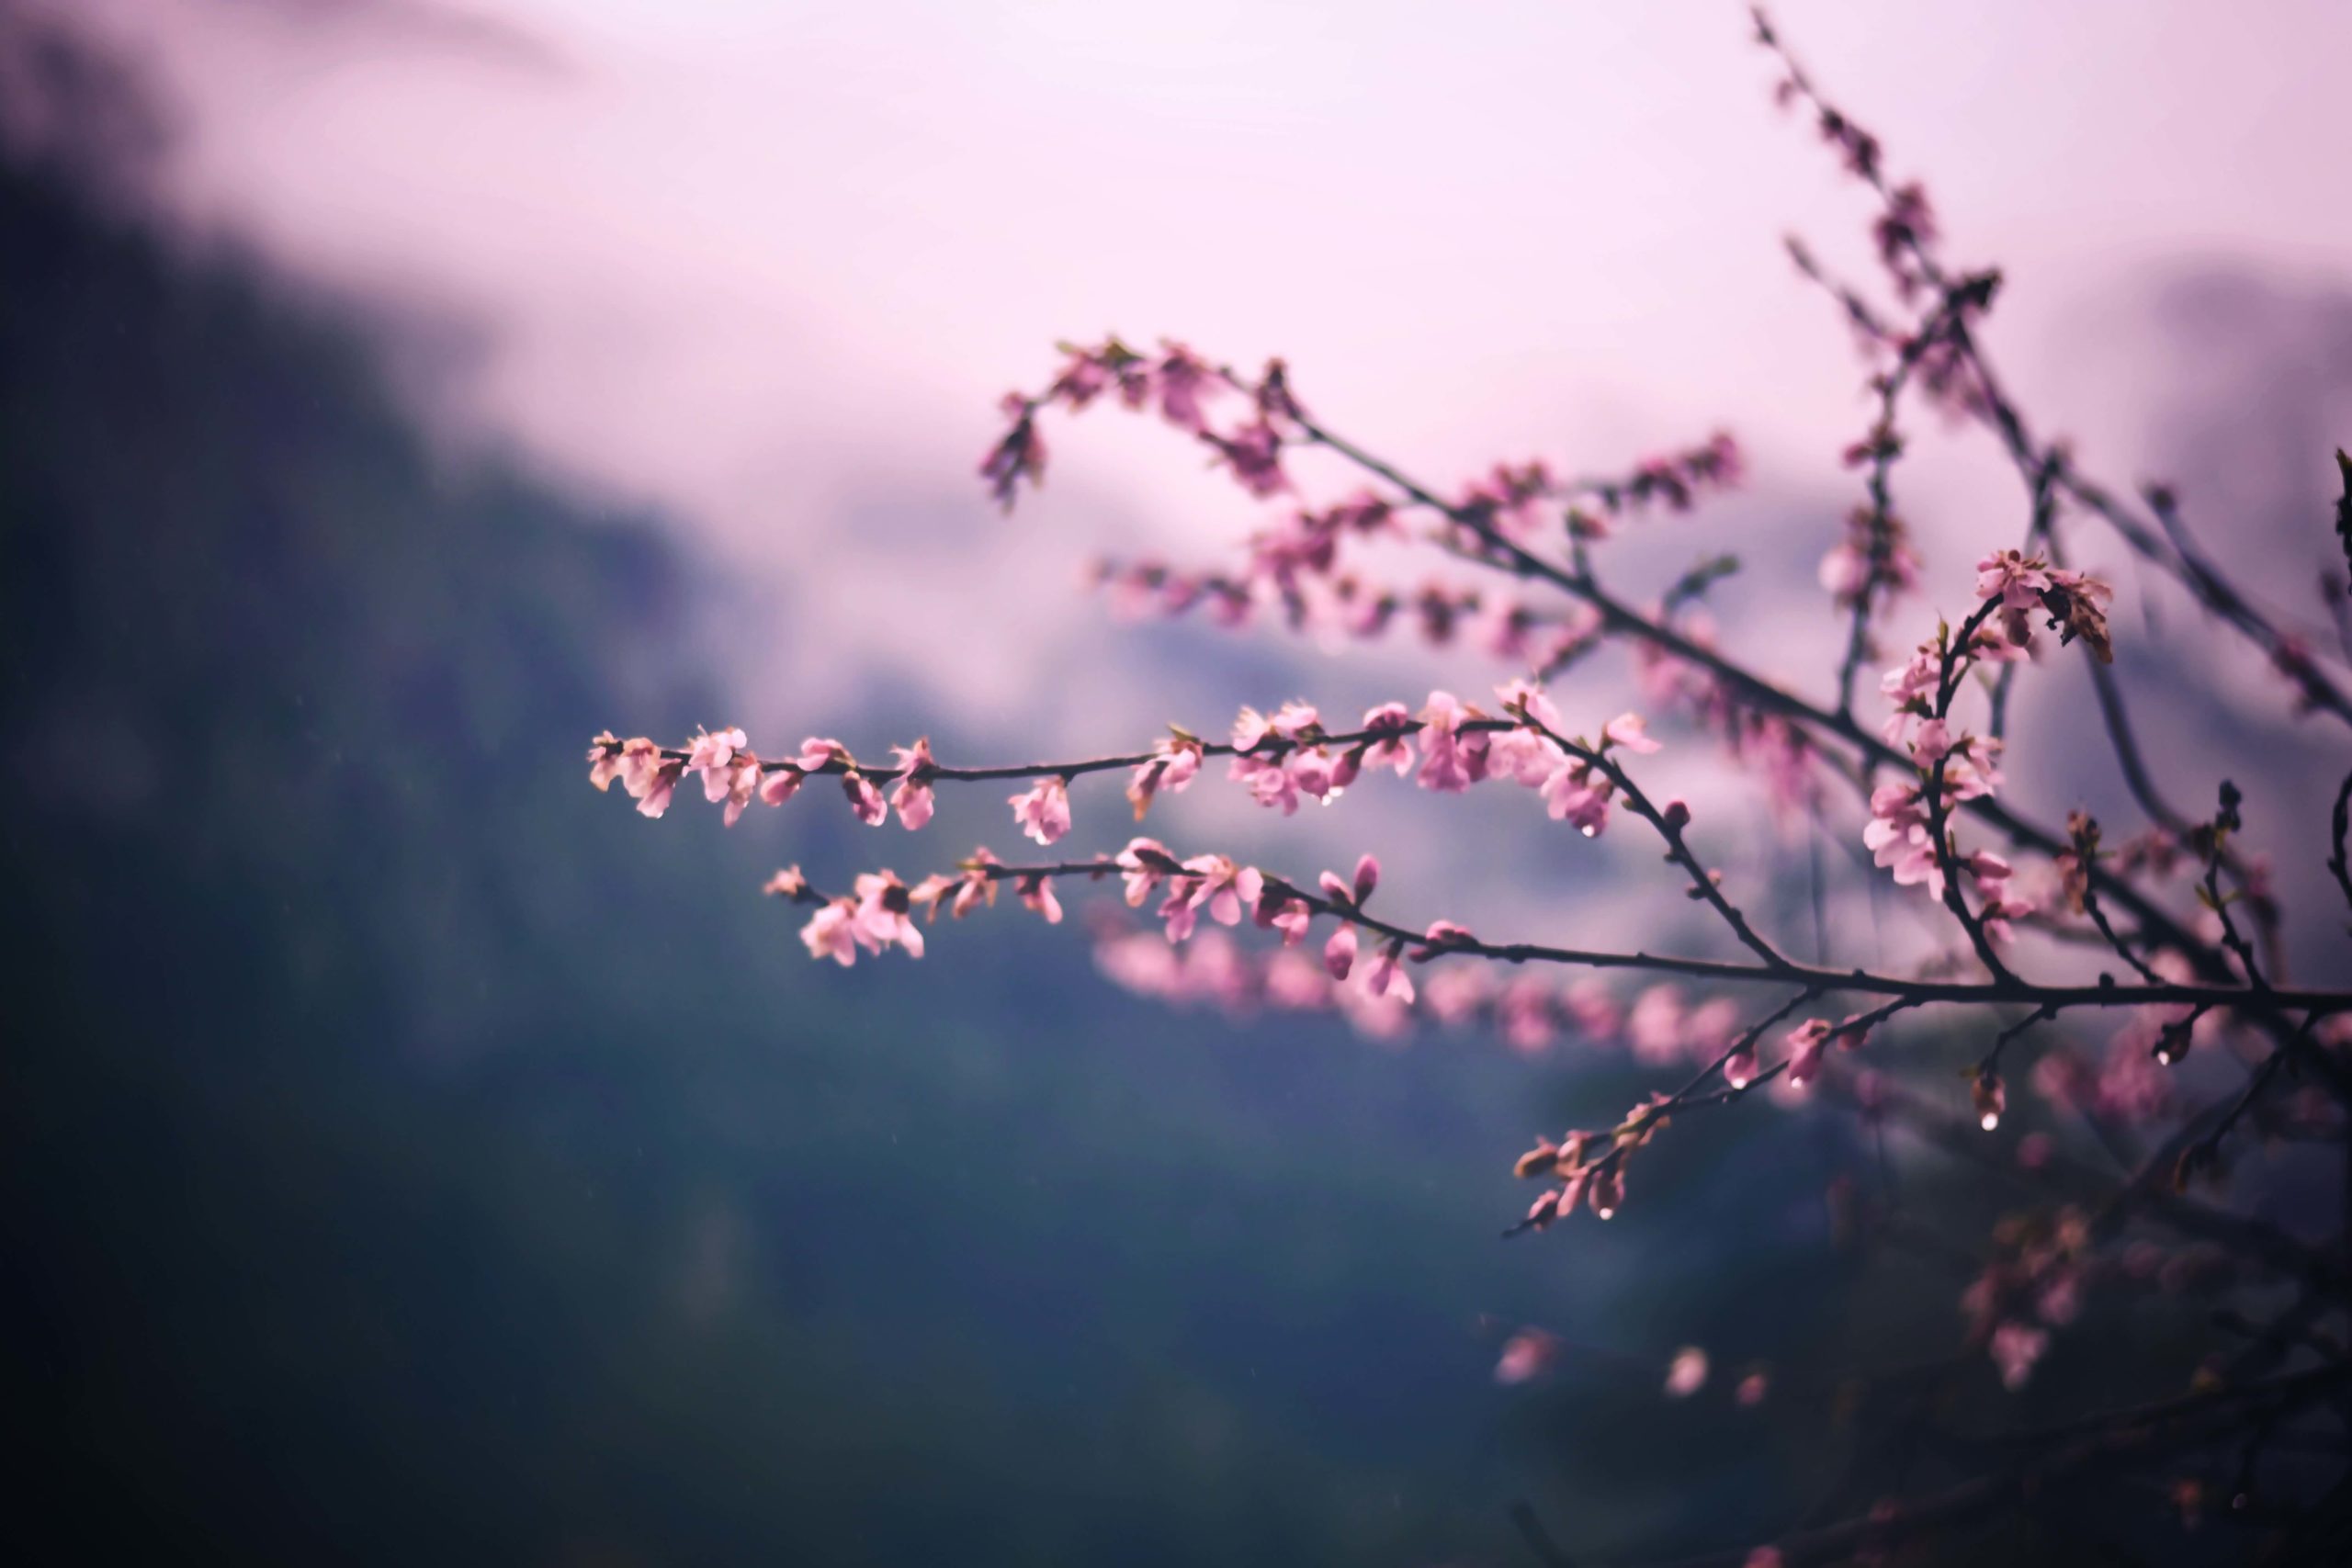 På billedet ses en del grene fra et træ med lyserøde blomster på